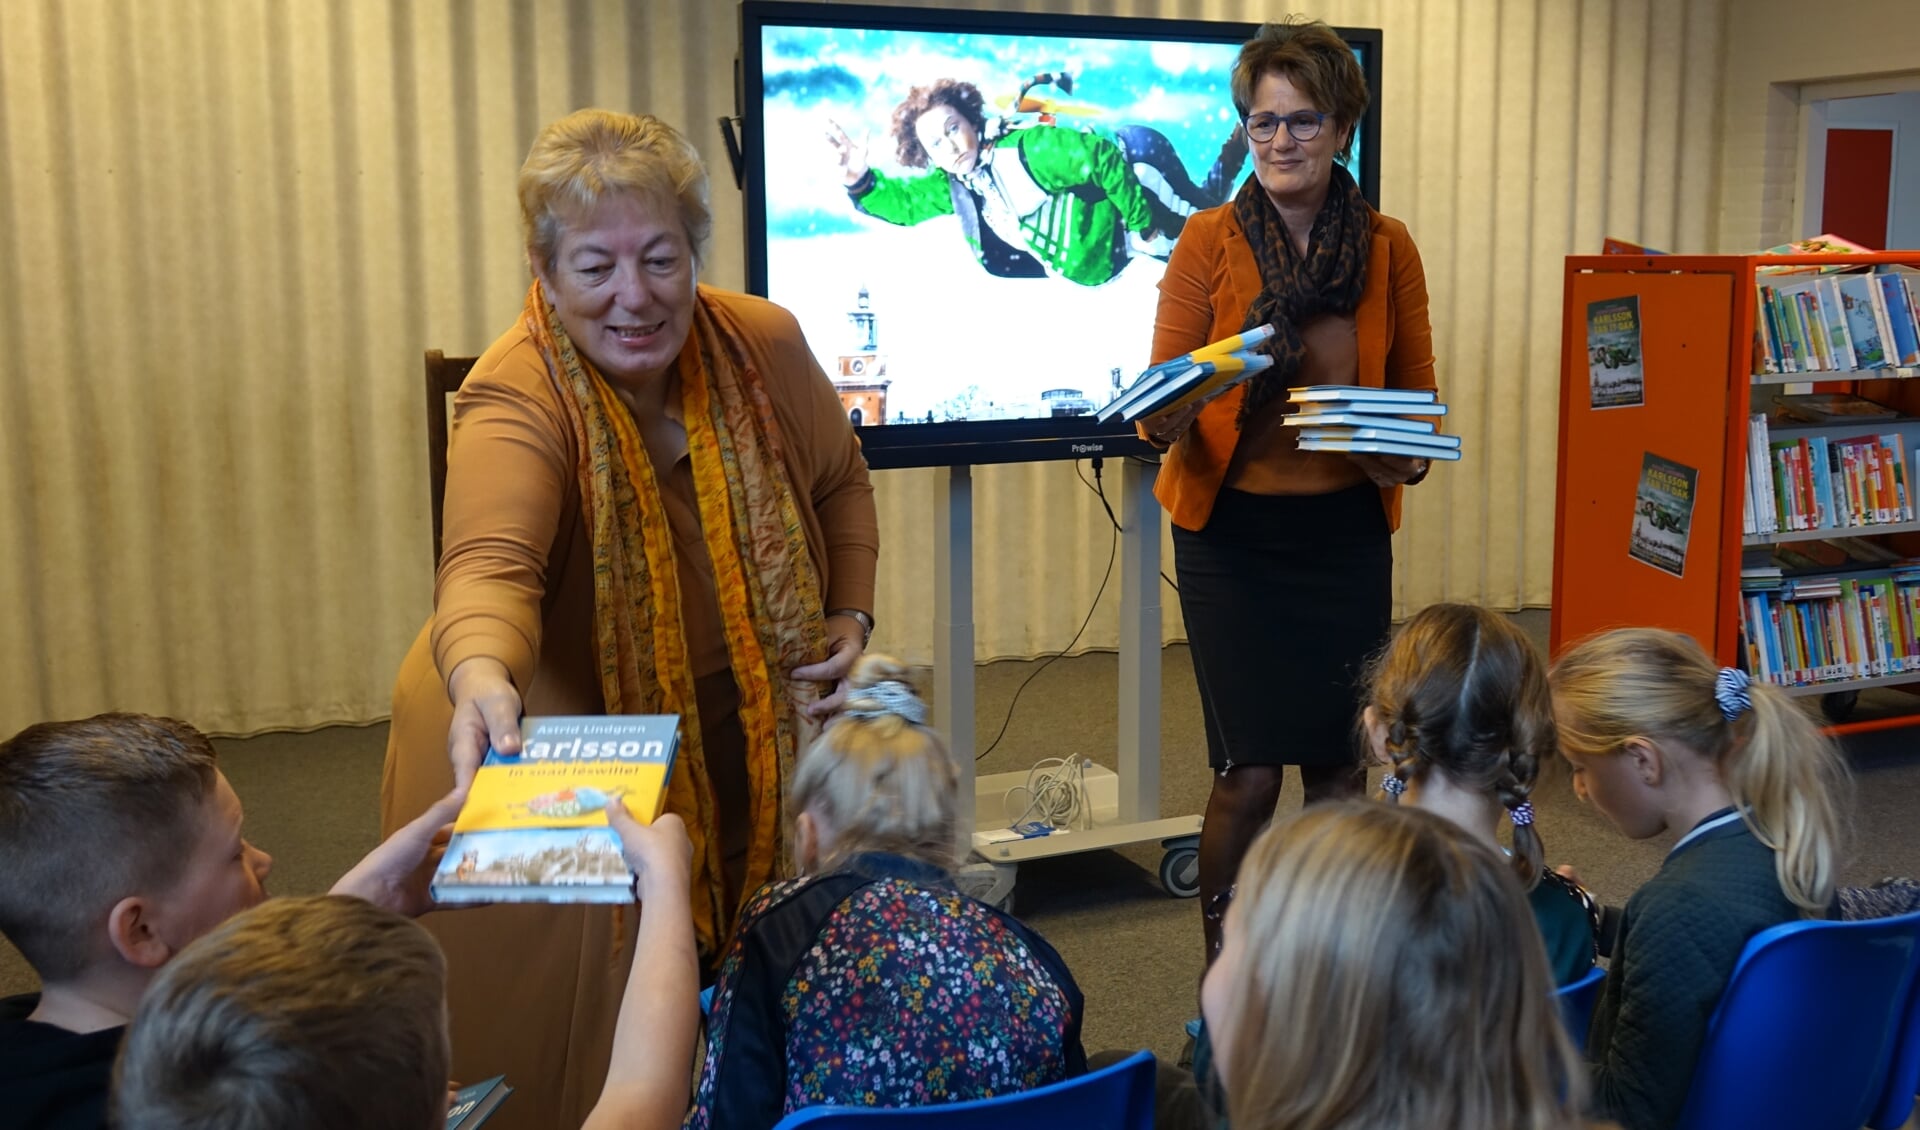 Wethouder Pytsje de Graaf reikte in november 2019 de eerste exemplaren uit van de Friese vertaling van kinderboek 'Karlsson op it dak'' van de Zweedse auteur Astrid Lindgren.